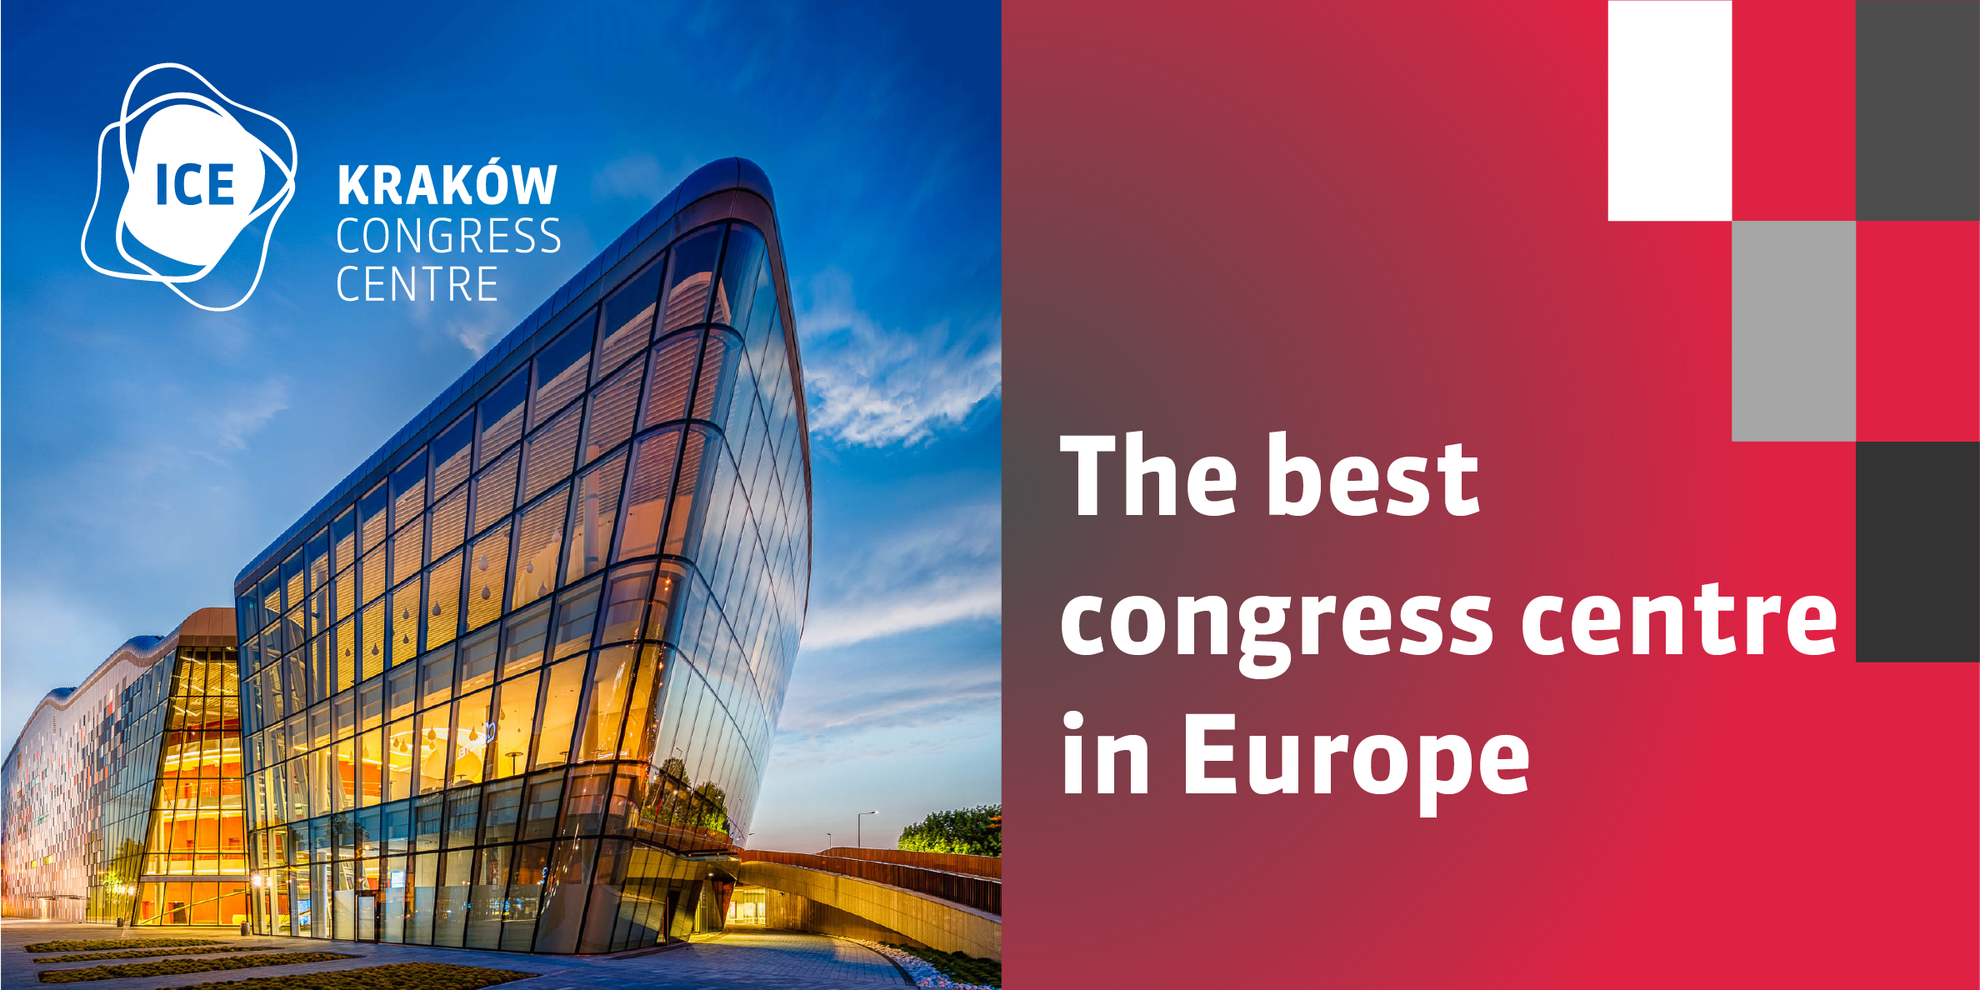 ICE Kraków voted best congress centre in Europe!